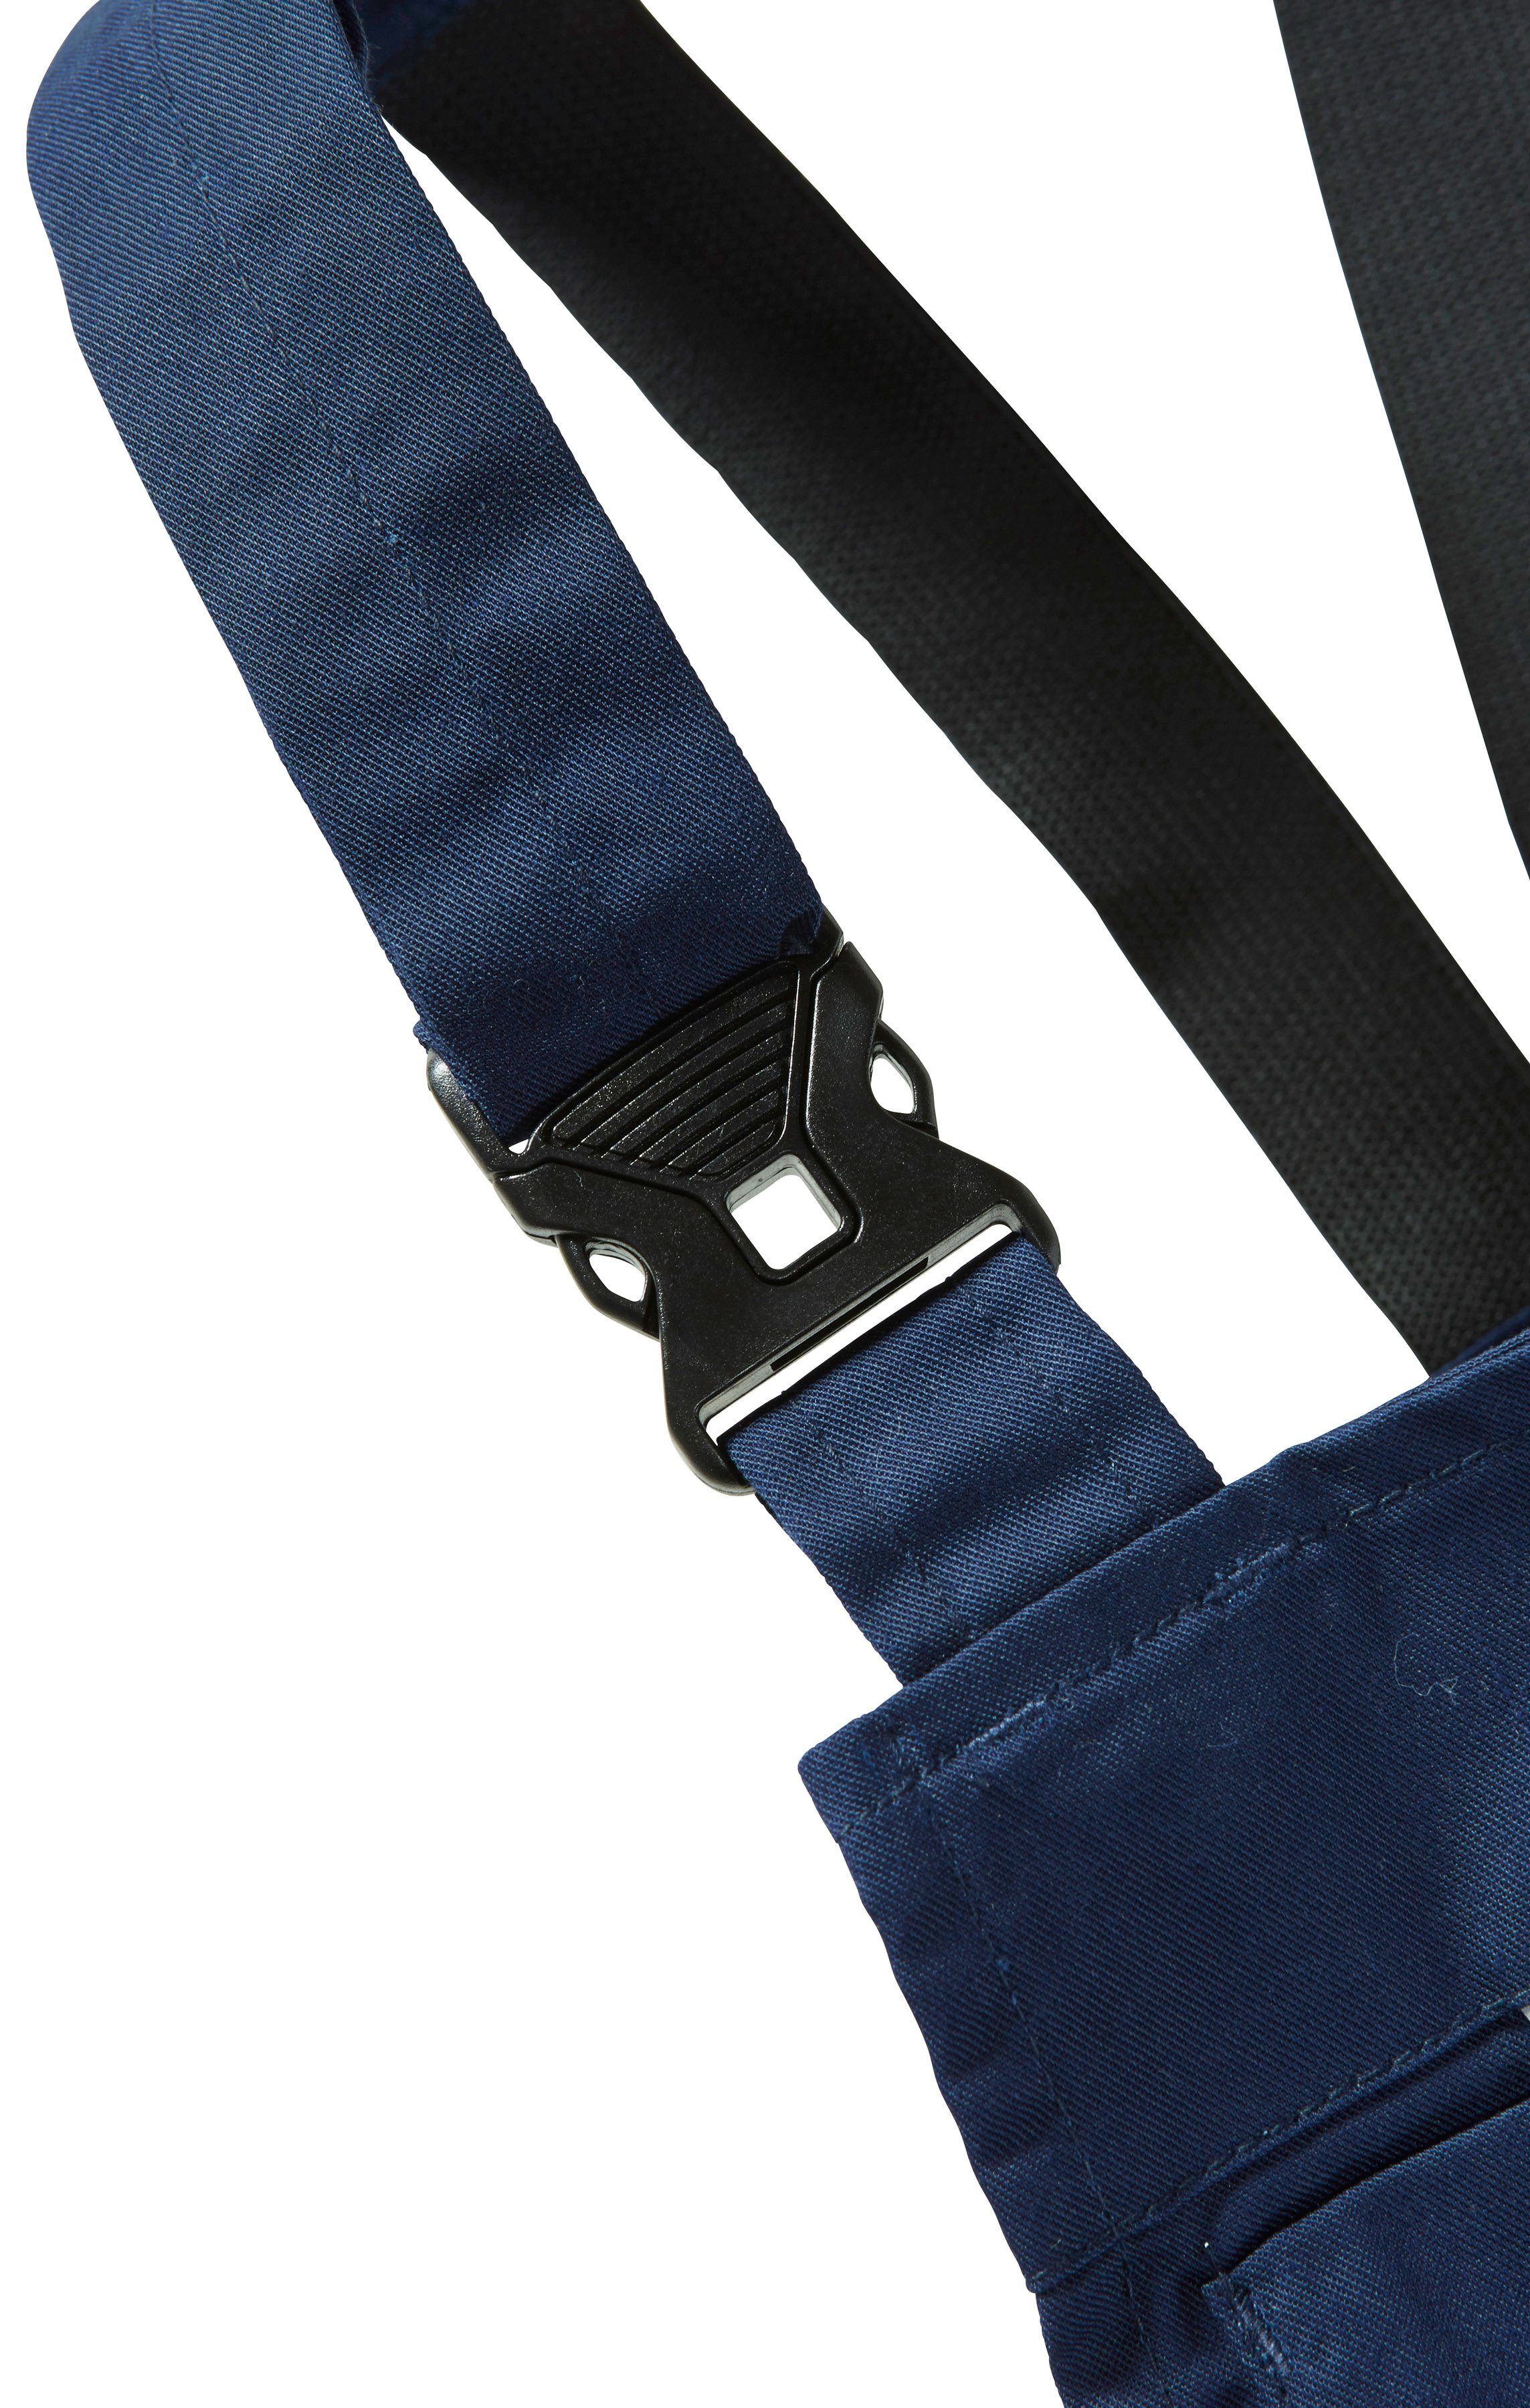 safety& Pull Latzhose more blau-schwarz mit Reflexeinsätzen